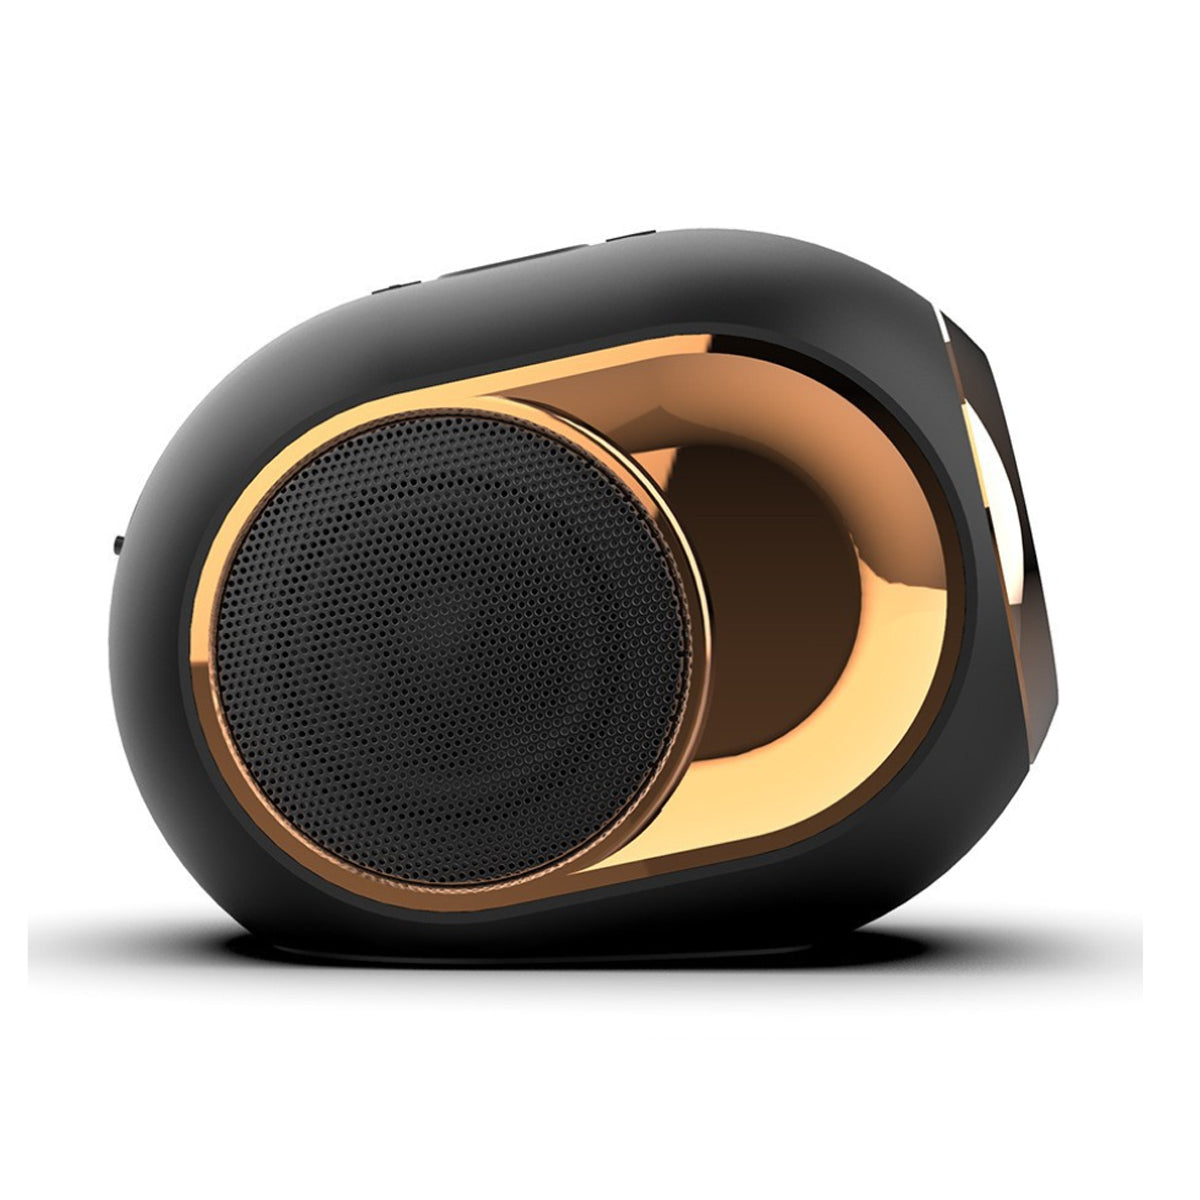 Olden Golden Bluetooth Speaker - 13208675_large_81b7523d-0e8c-4266-a150-e0df3c3d1aa9